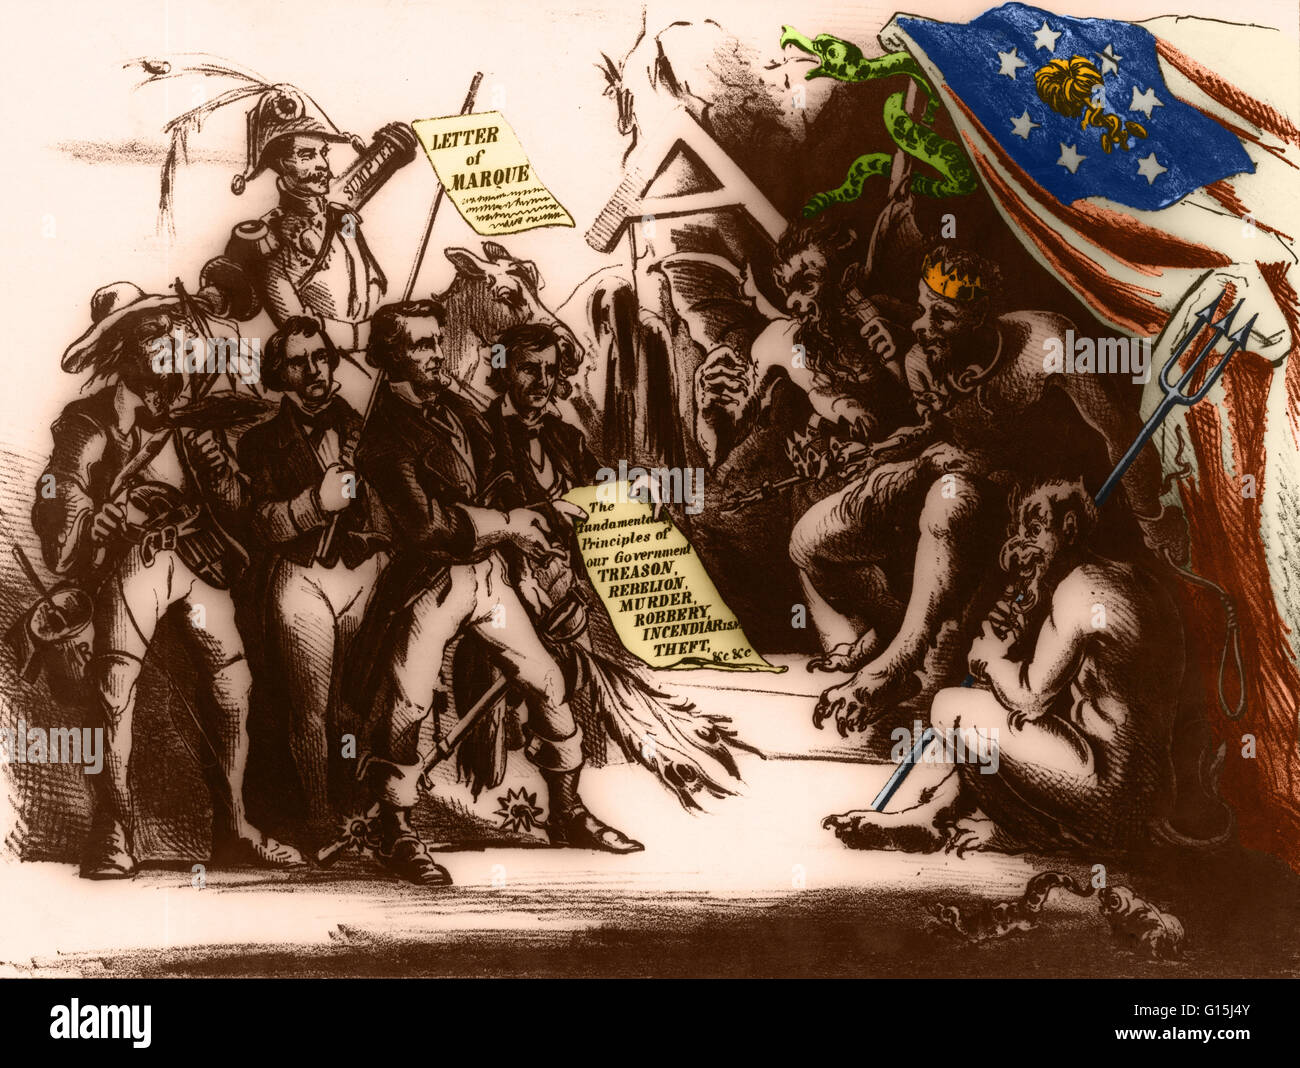 Farbe verstärkt politische Karikatur, mit dem Titel "The Southern Konföderation ein Fakt!!!", die Konföderation als eine Regierung in Liga mit Satan repräsentiert. Von links nach rechts sind: "Herr Mob Recht Oberrichter," ein Schläger mit einem Topf von Teer; Staatssekretär Robert Stockfoto